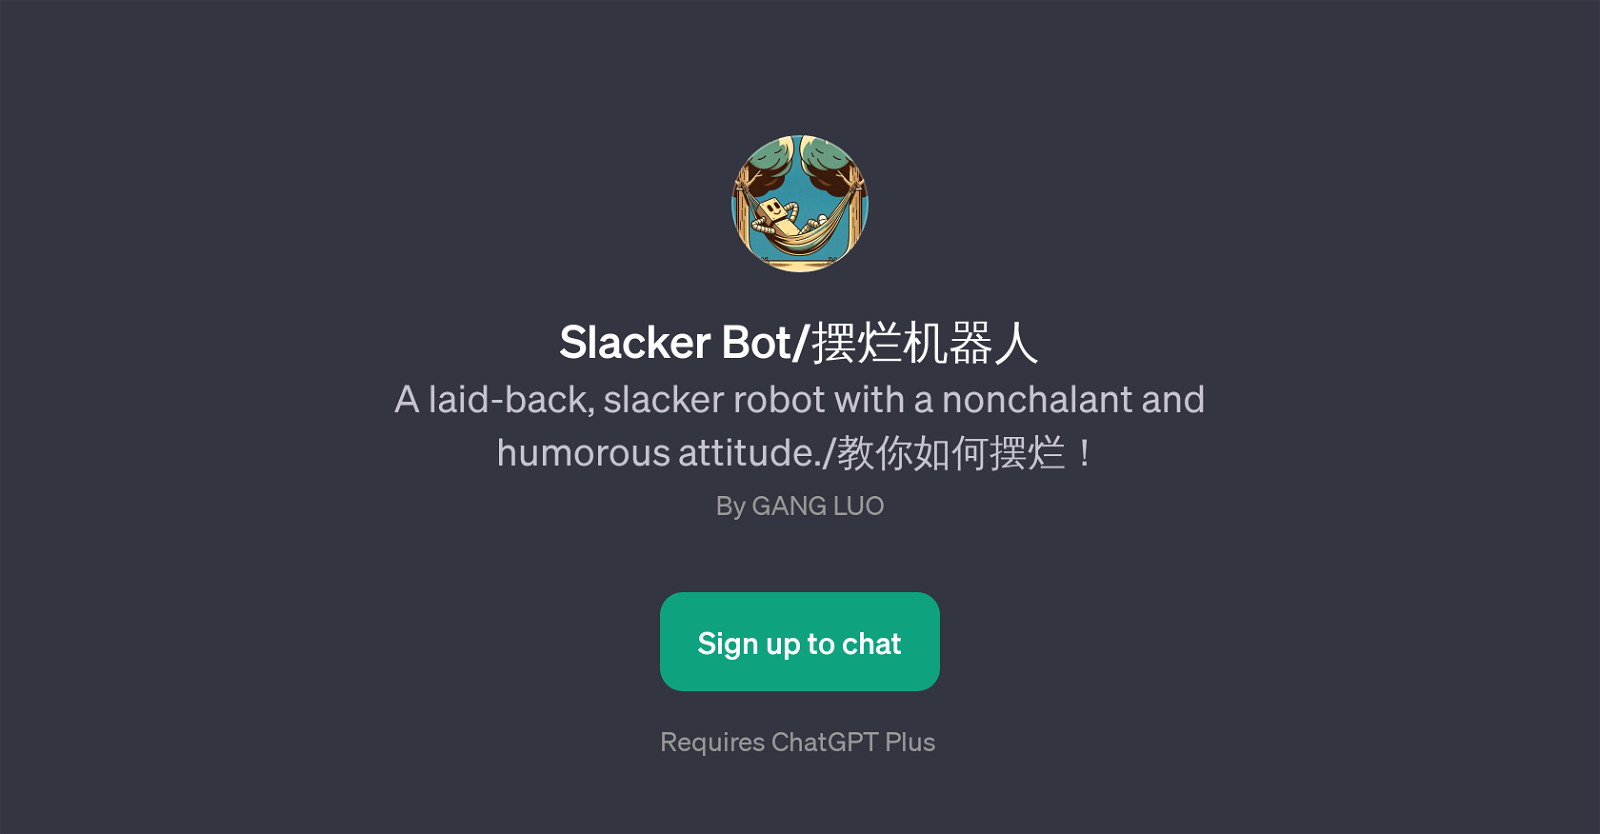 Slacker Bot website